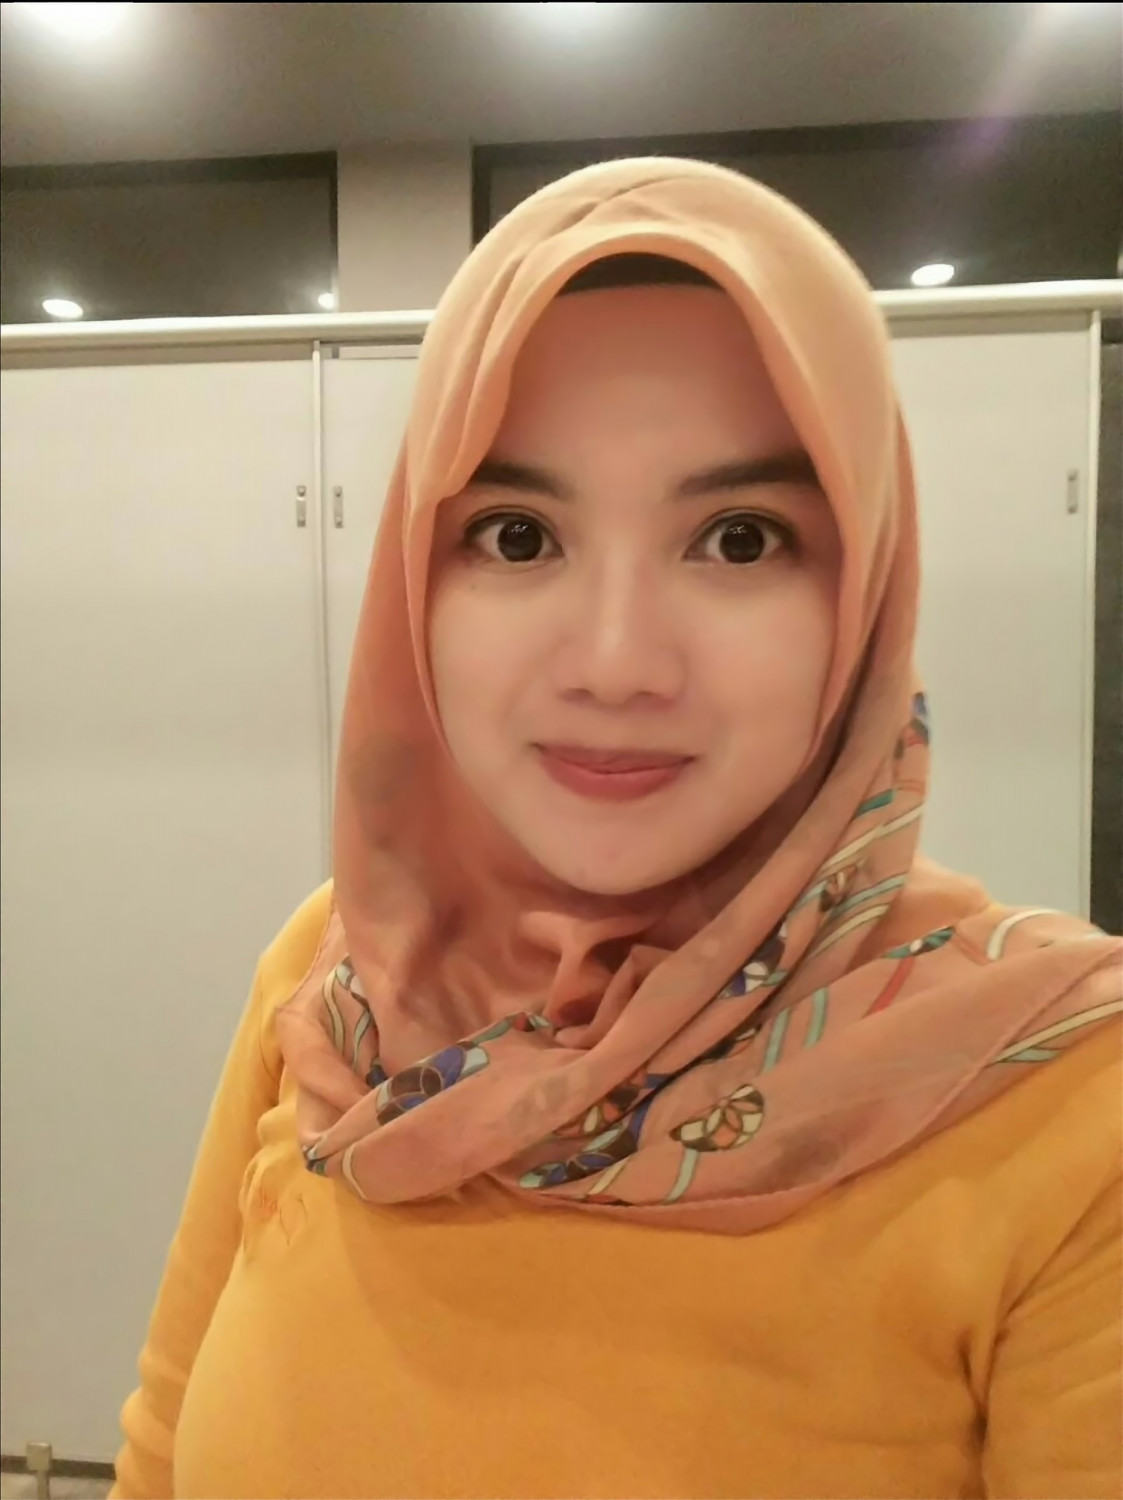 JP-0010 Malaysian muslim girl - Porn Videos and Photos